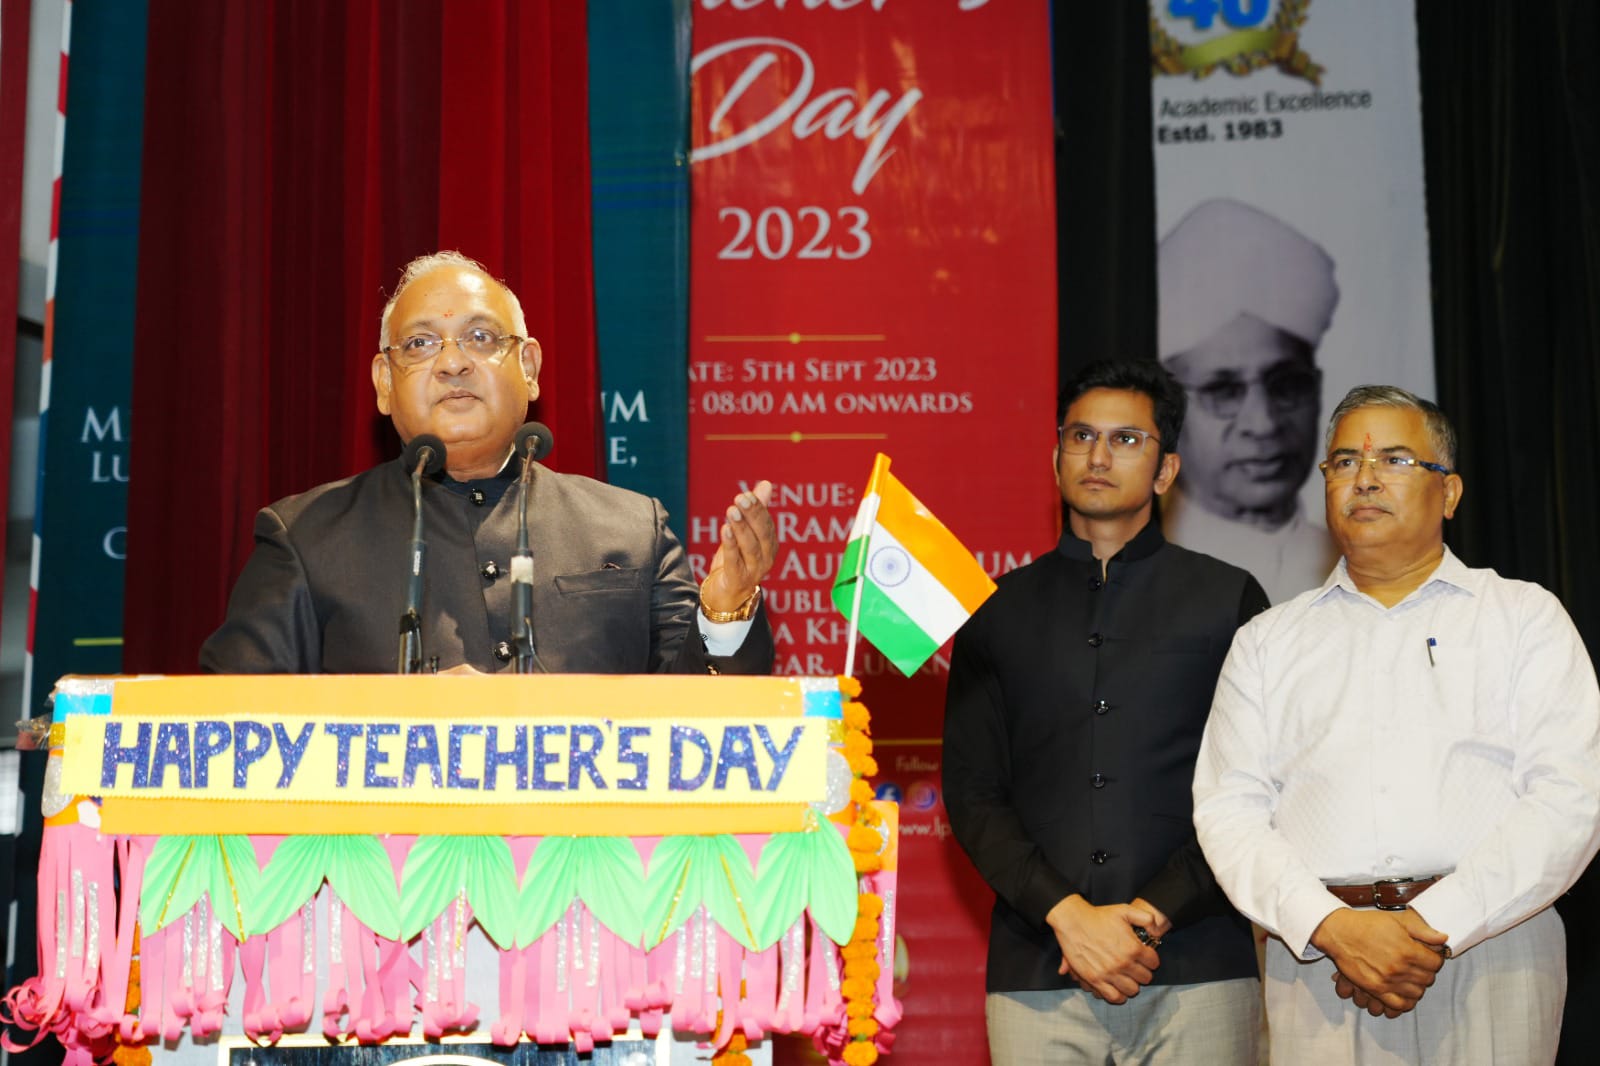 Teachers day program celebration in lucknow public school